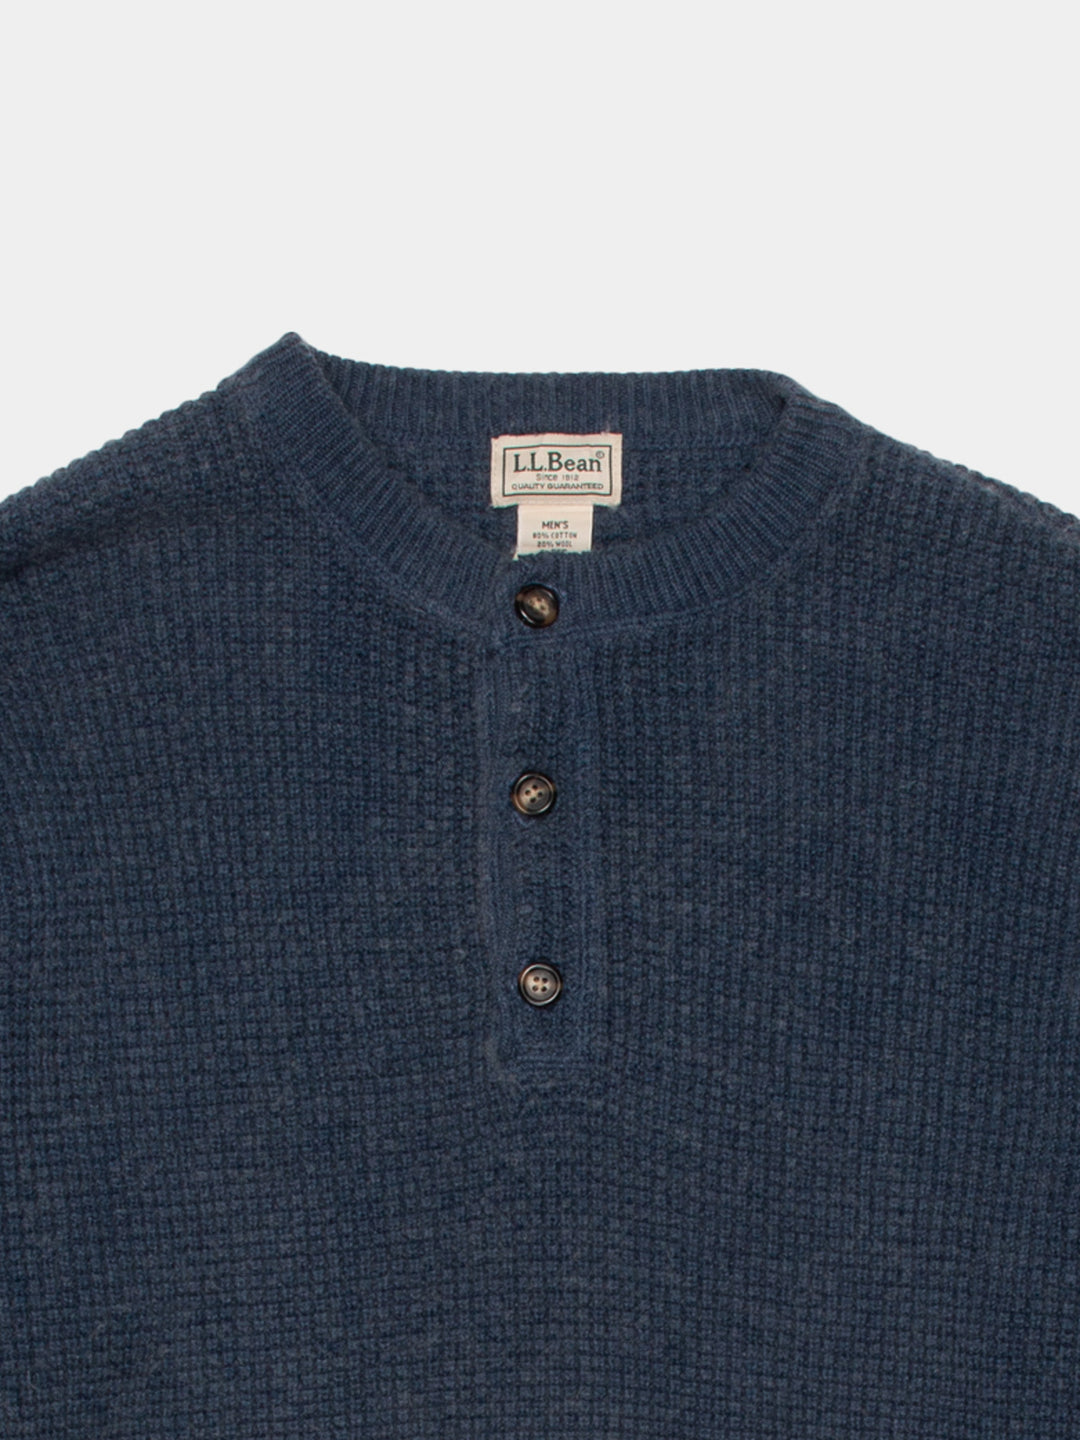 Modern L.L.Bean Sweater (L)